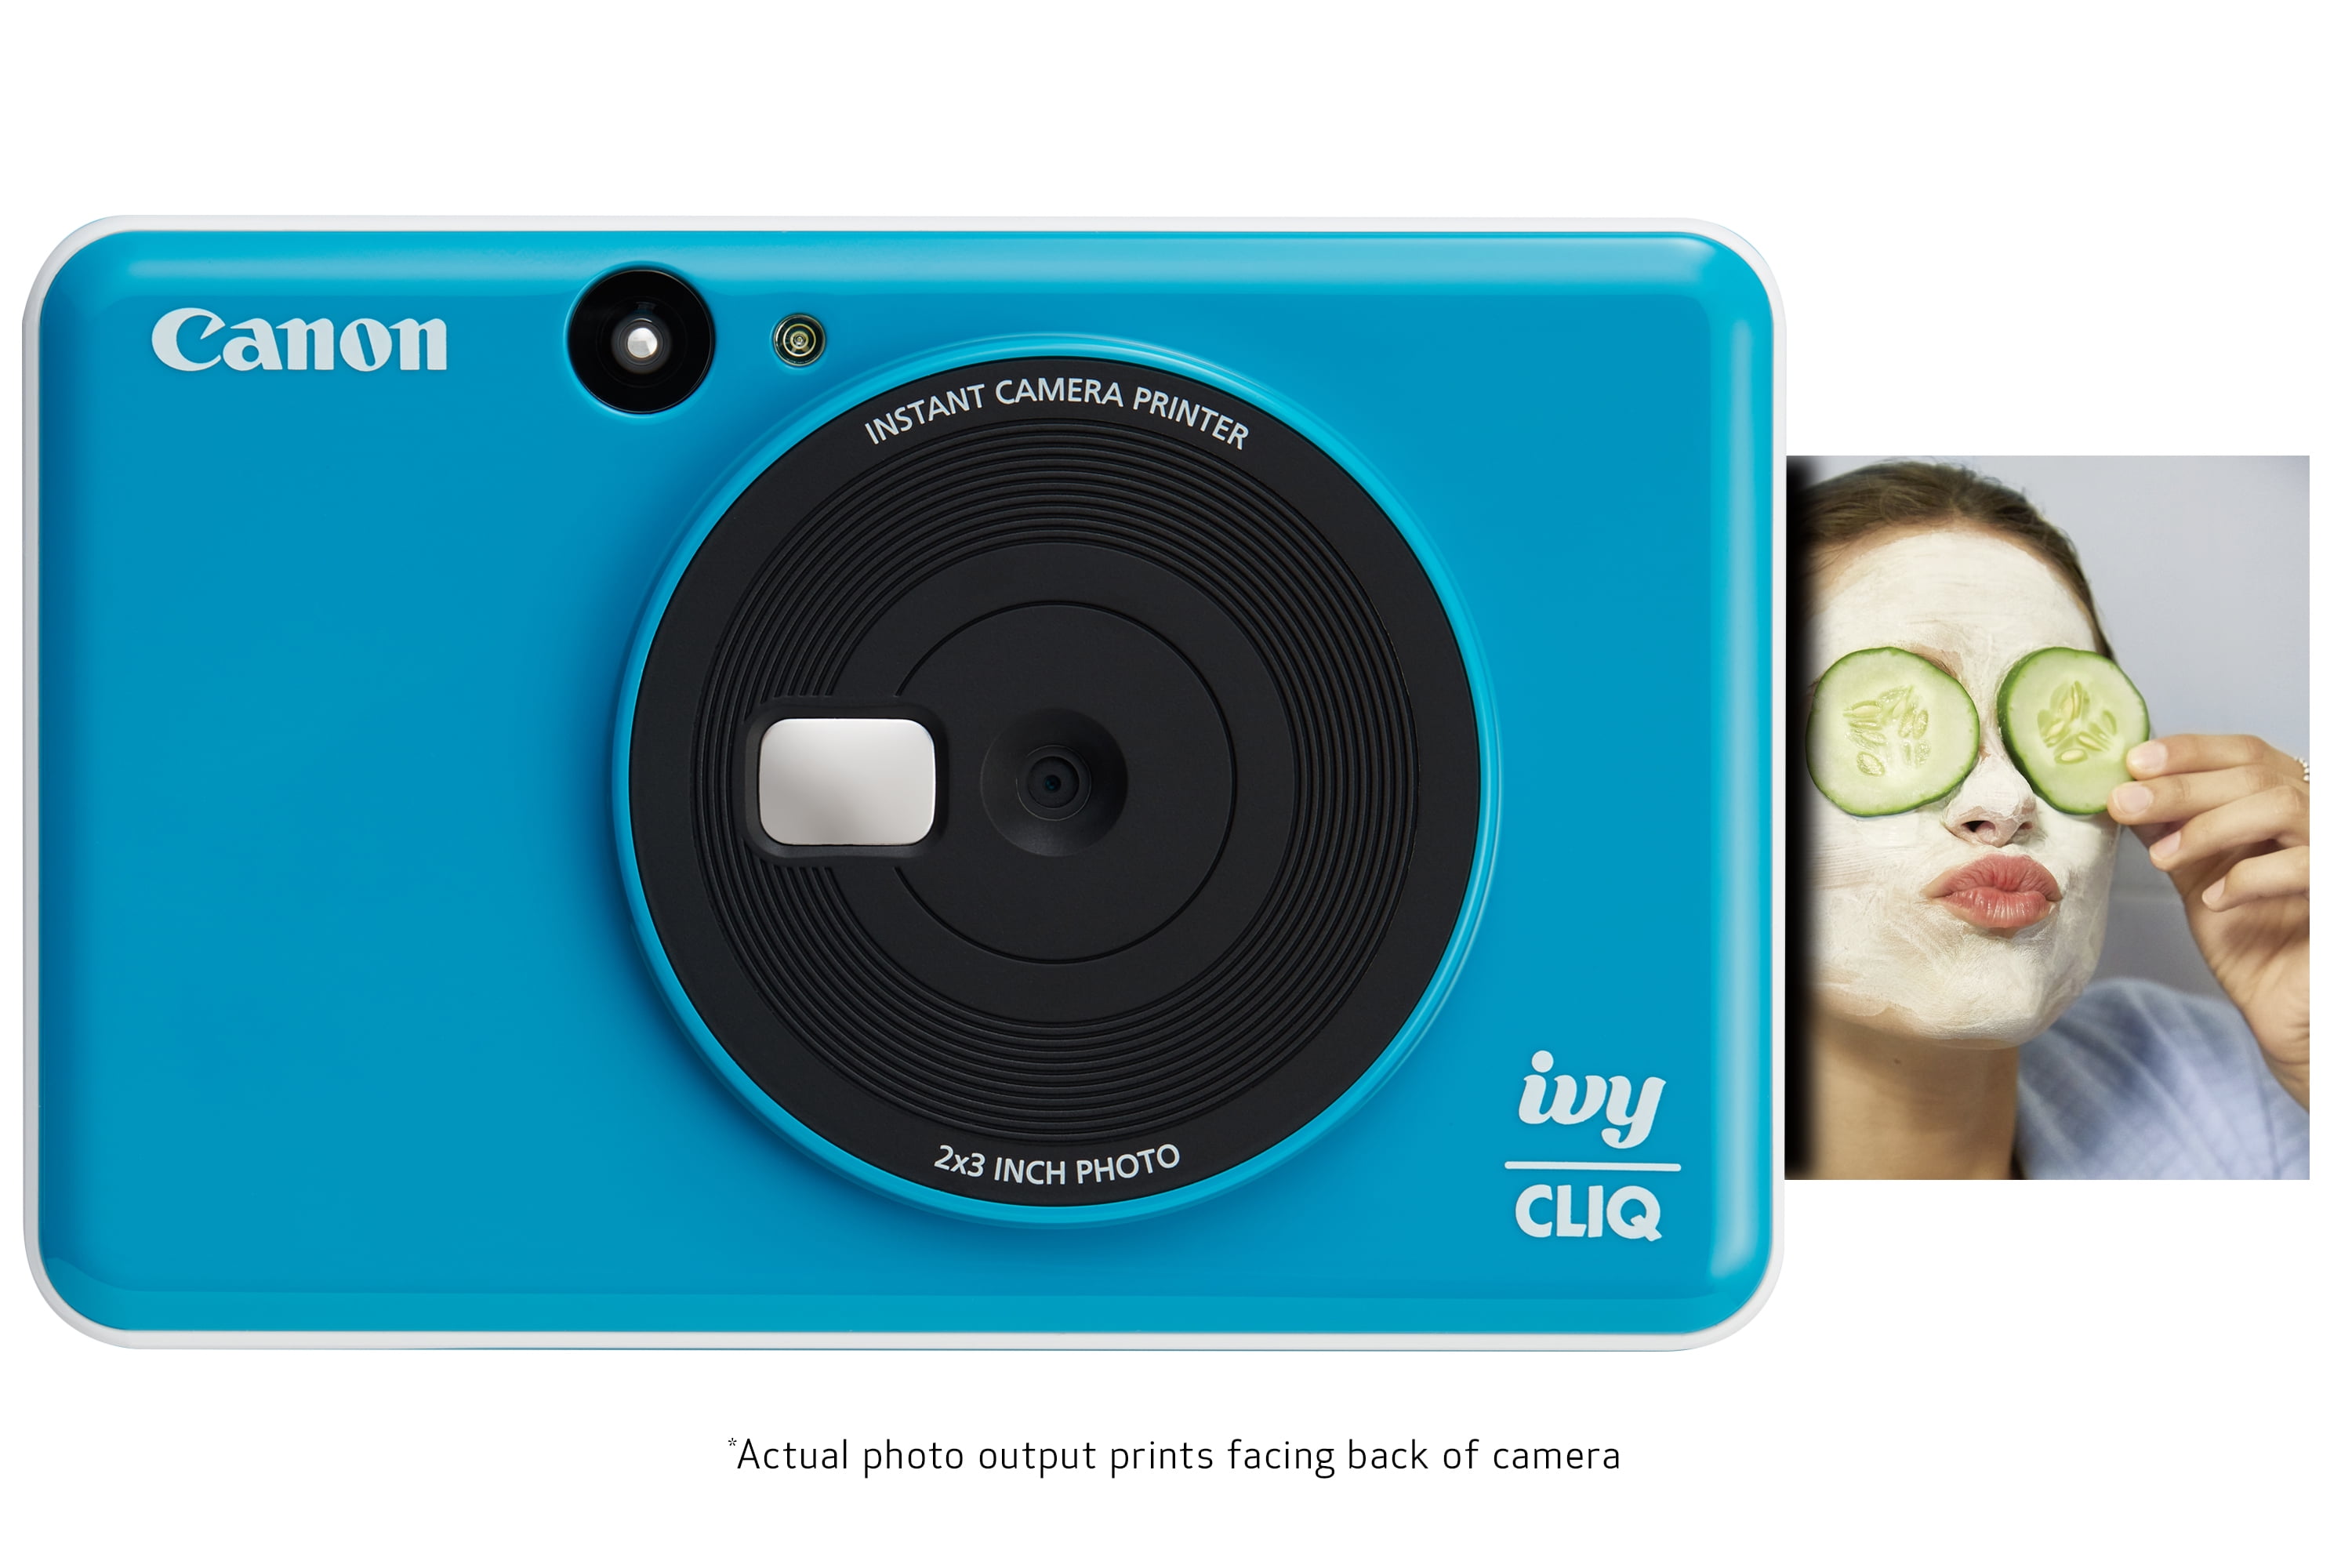  Canon 3884C004 Ivy CLIQ Instant Camera Printer, Mini